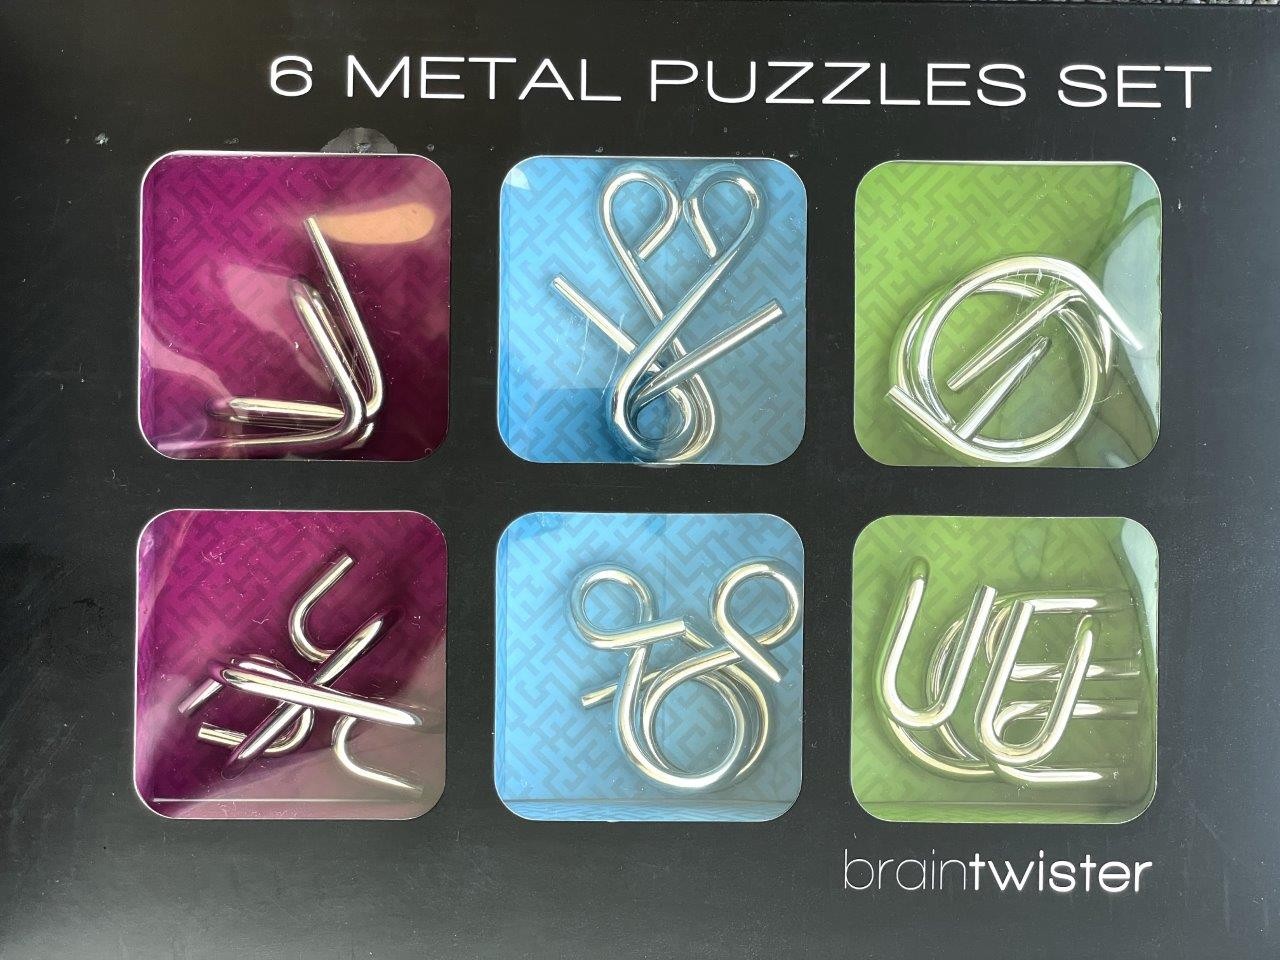 Le Mi Arts Series - Chrome Puzzles Set of 6